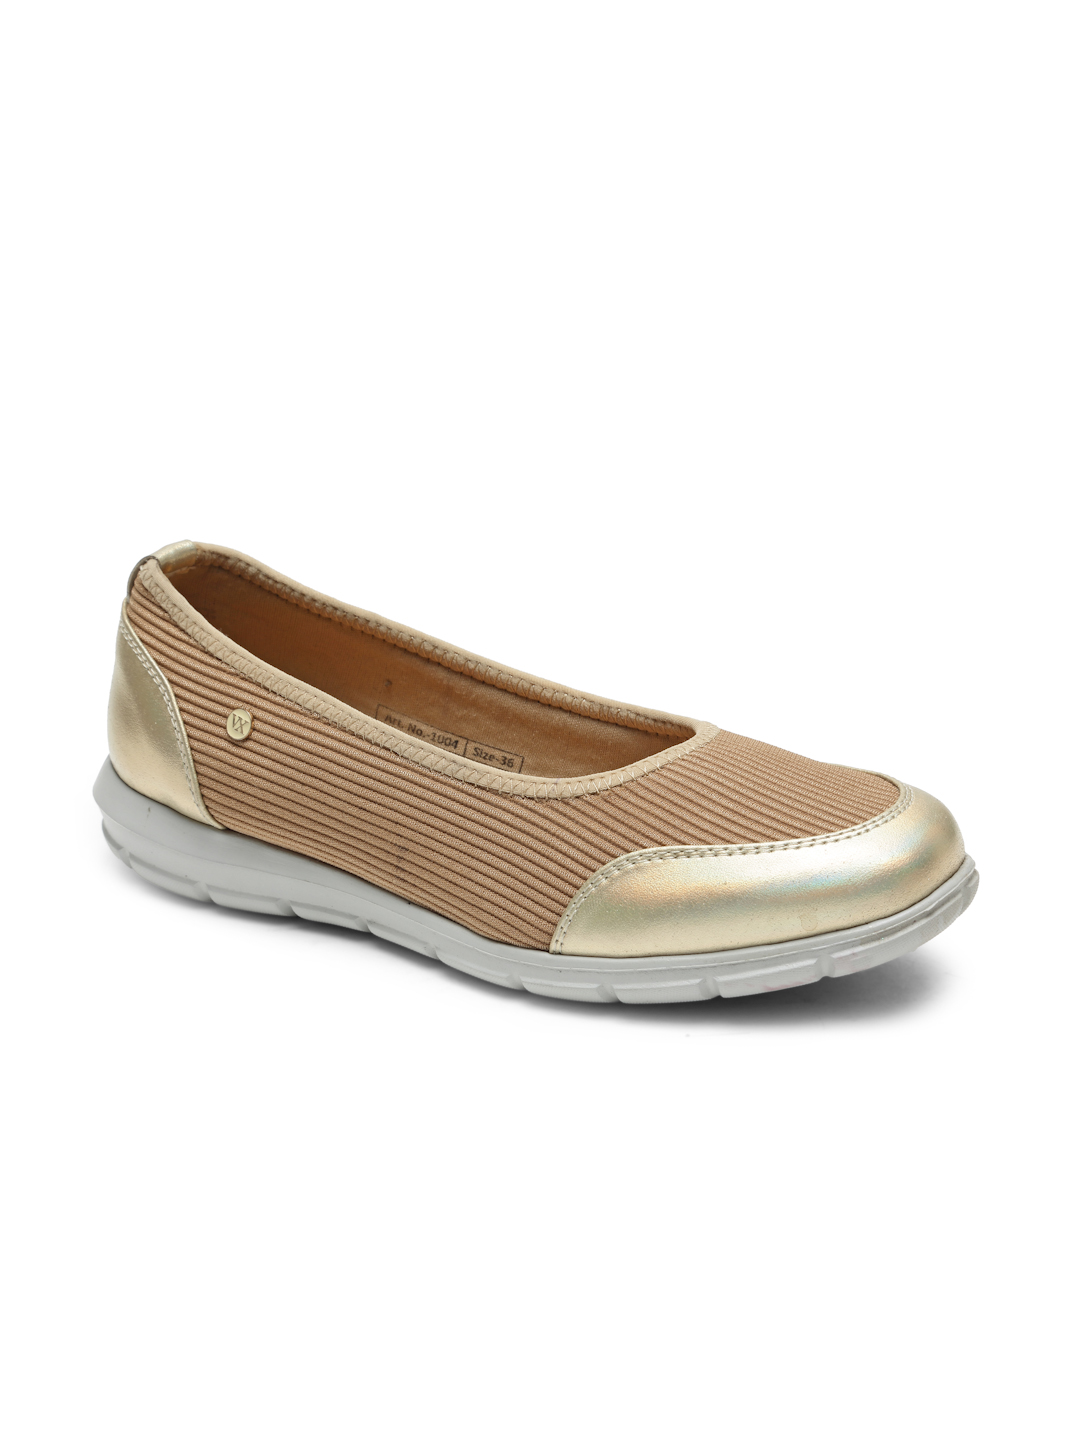 Buy Von Wellx Germany Comfort Women's Beige Casual Shoes Alice Online in Chandigarh